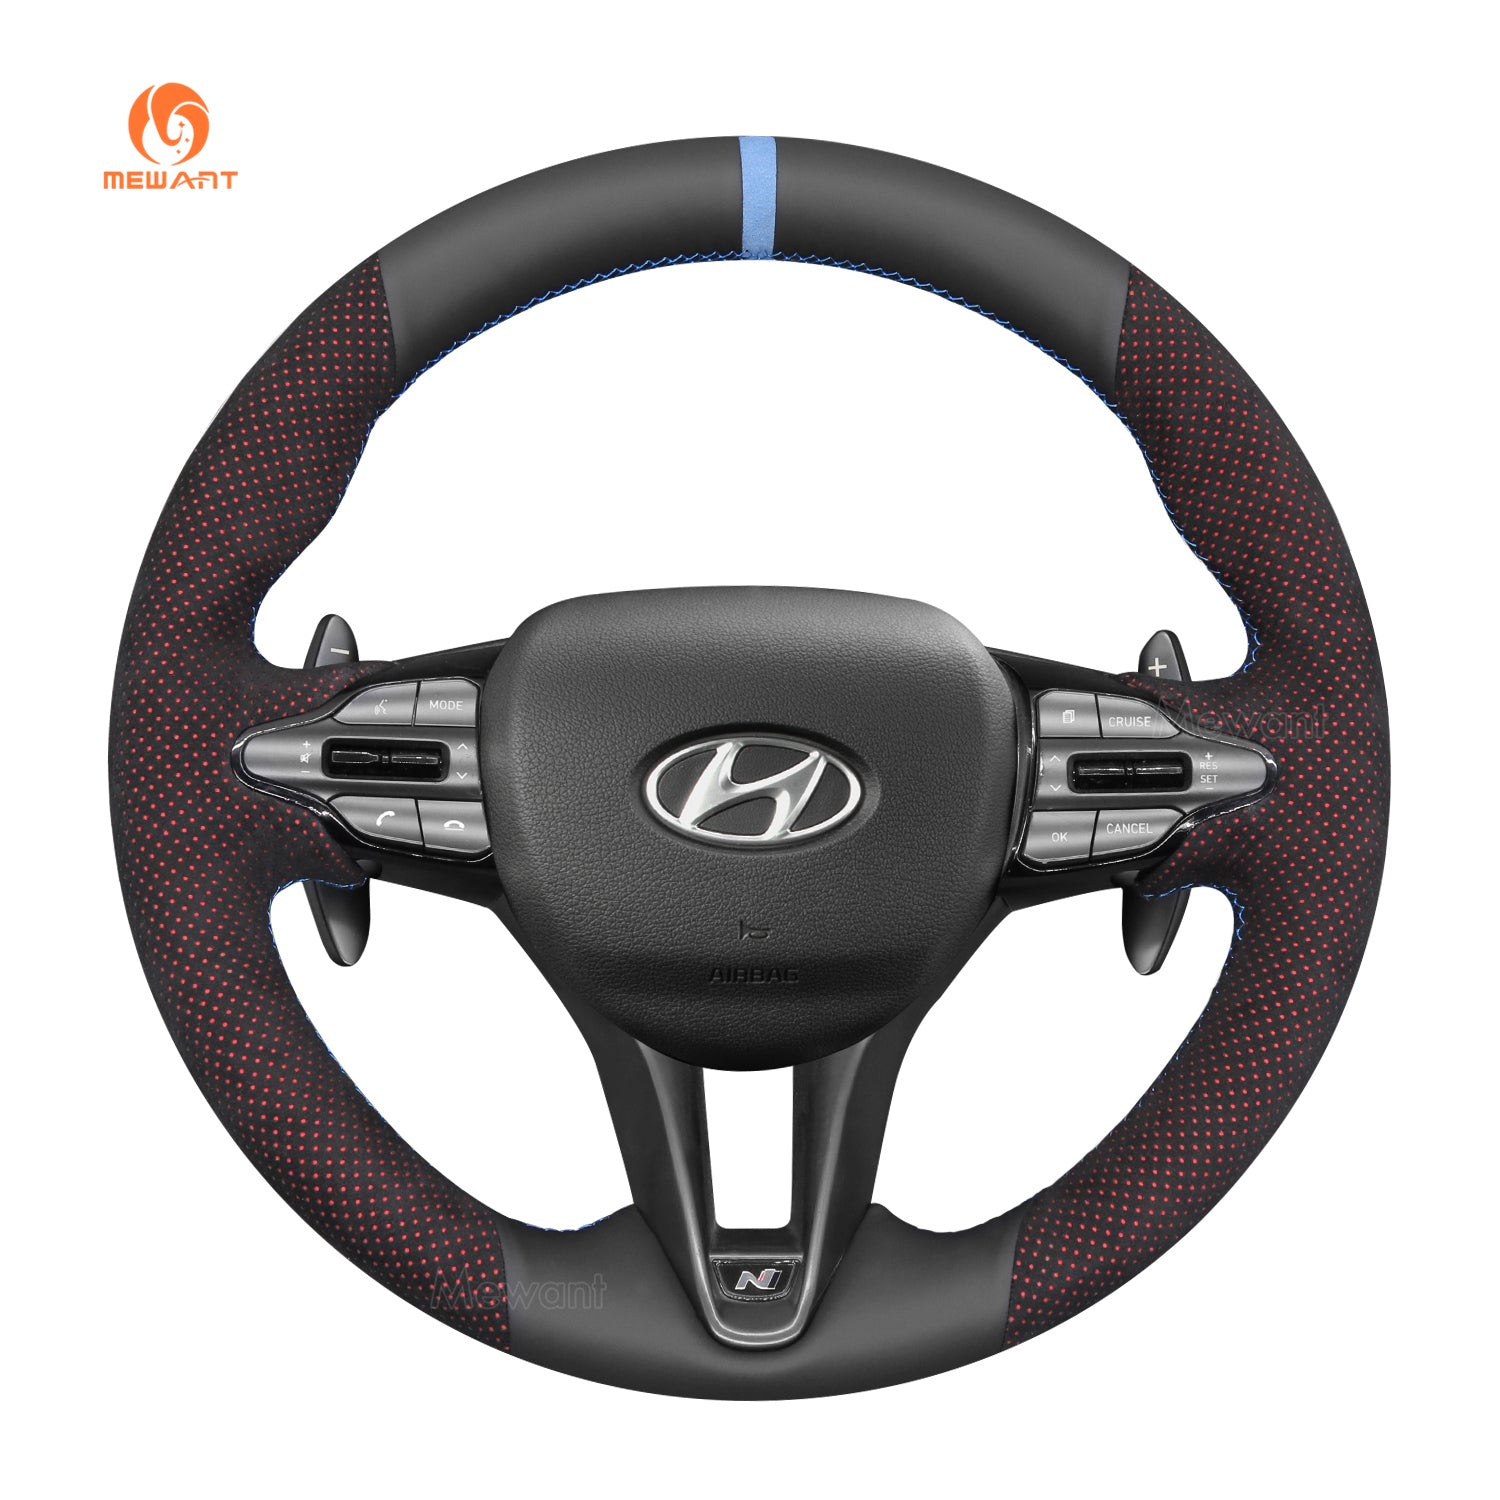 Simplemente lee DIY cuero negro gamuza fibra de carbono protector para volante de coche para Hyundai i30 N 2018-2020 / Veloster N 2019-2021